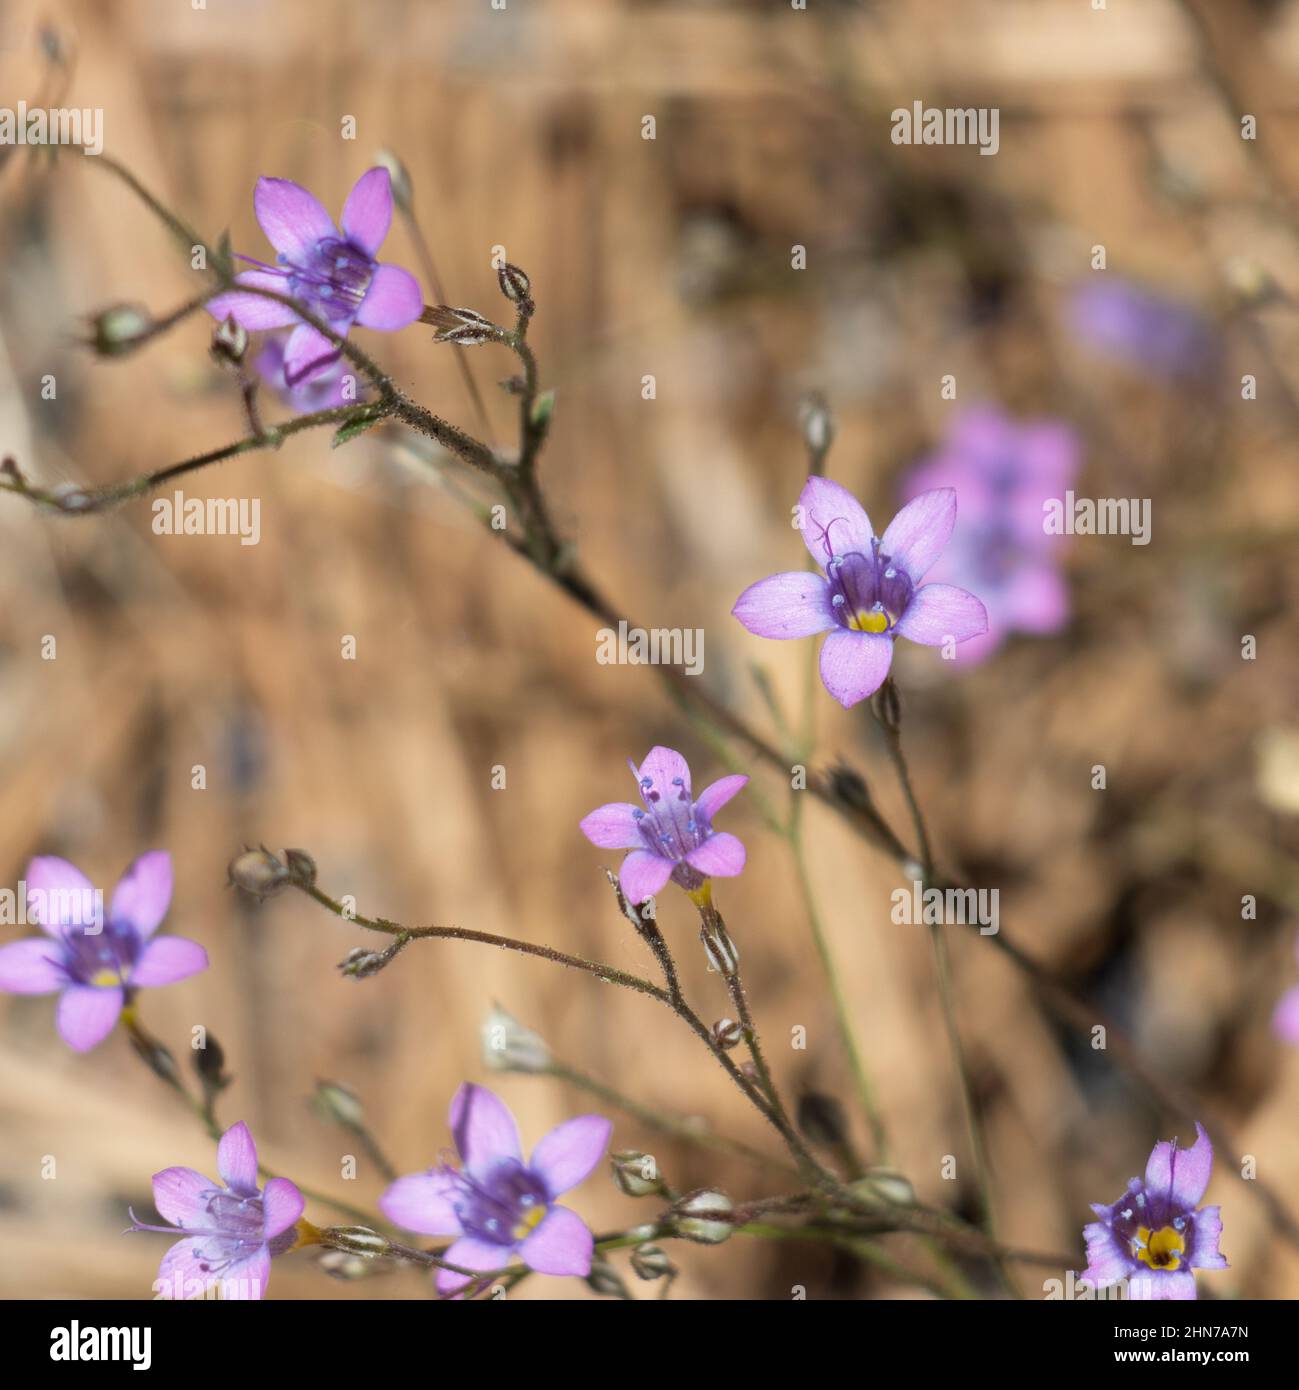 Inflorescences de cyme terminal à fleurs violettes de Saltugilia splendens, Polemoniaceae, herbe indigène annuelle dans les montagnes de San Gabriel, été. Banque D'Images